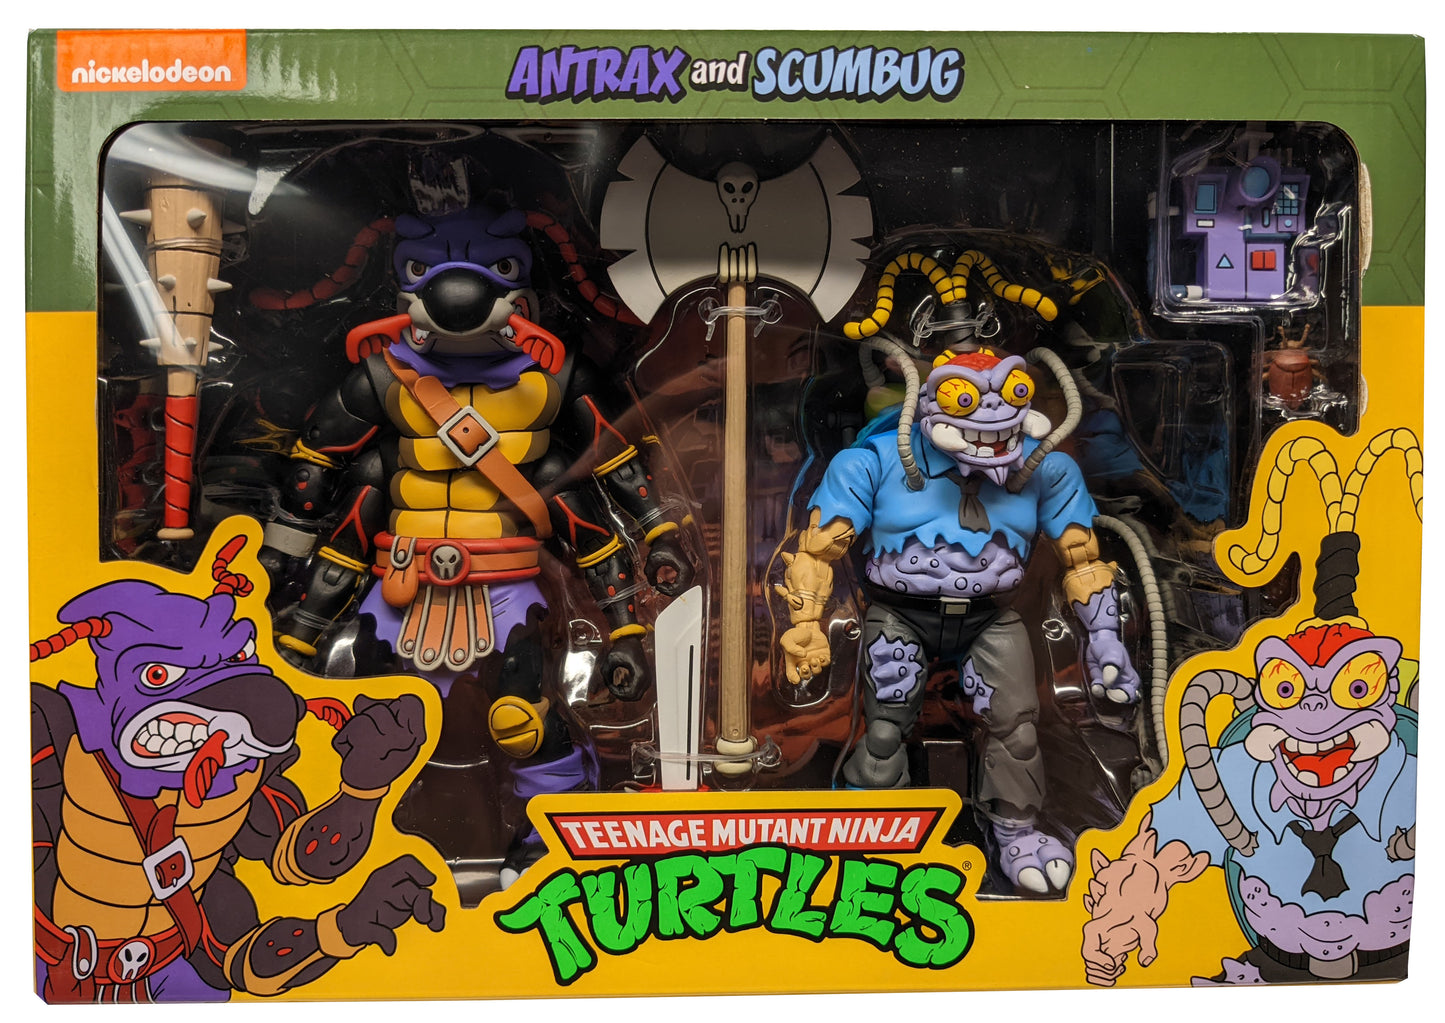 NECA - Teenage Mutant Ninja Turtles - Antrax and Scumbug